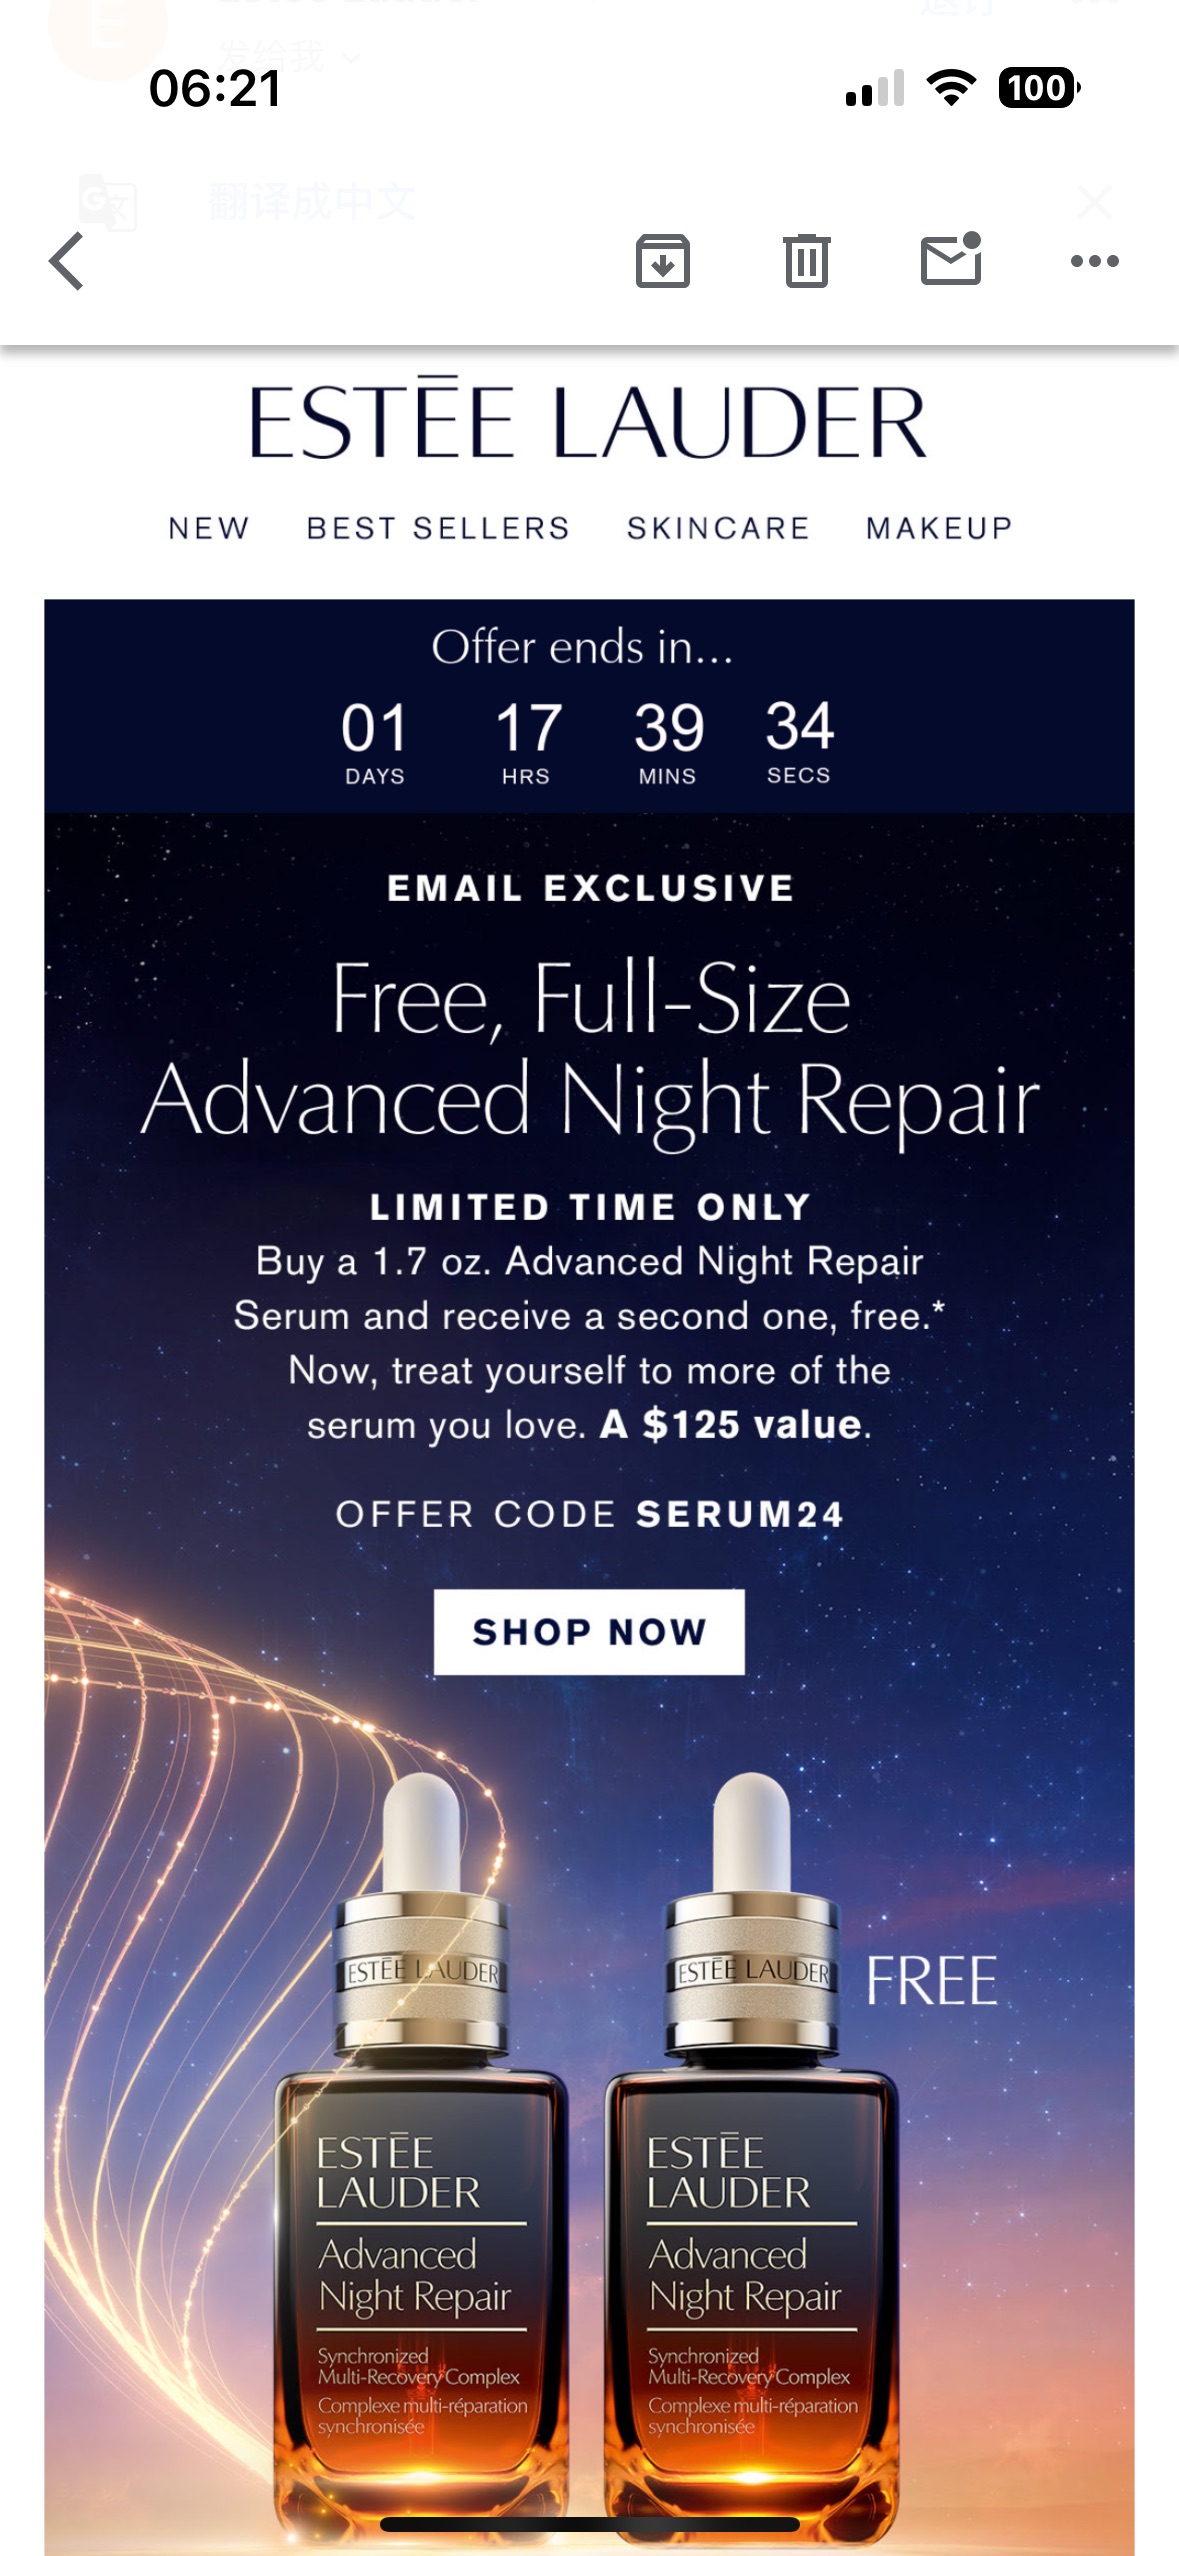 Free Full-Size Advanced Night Repair code: SERUM24